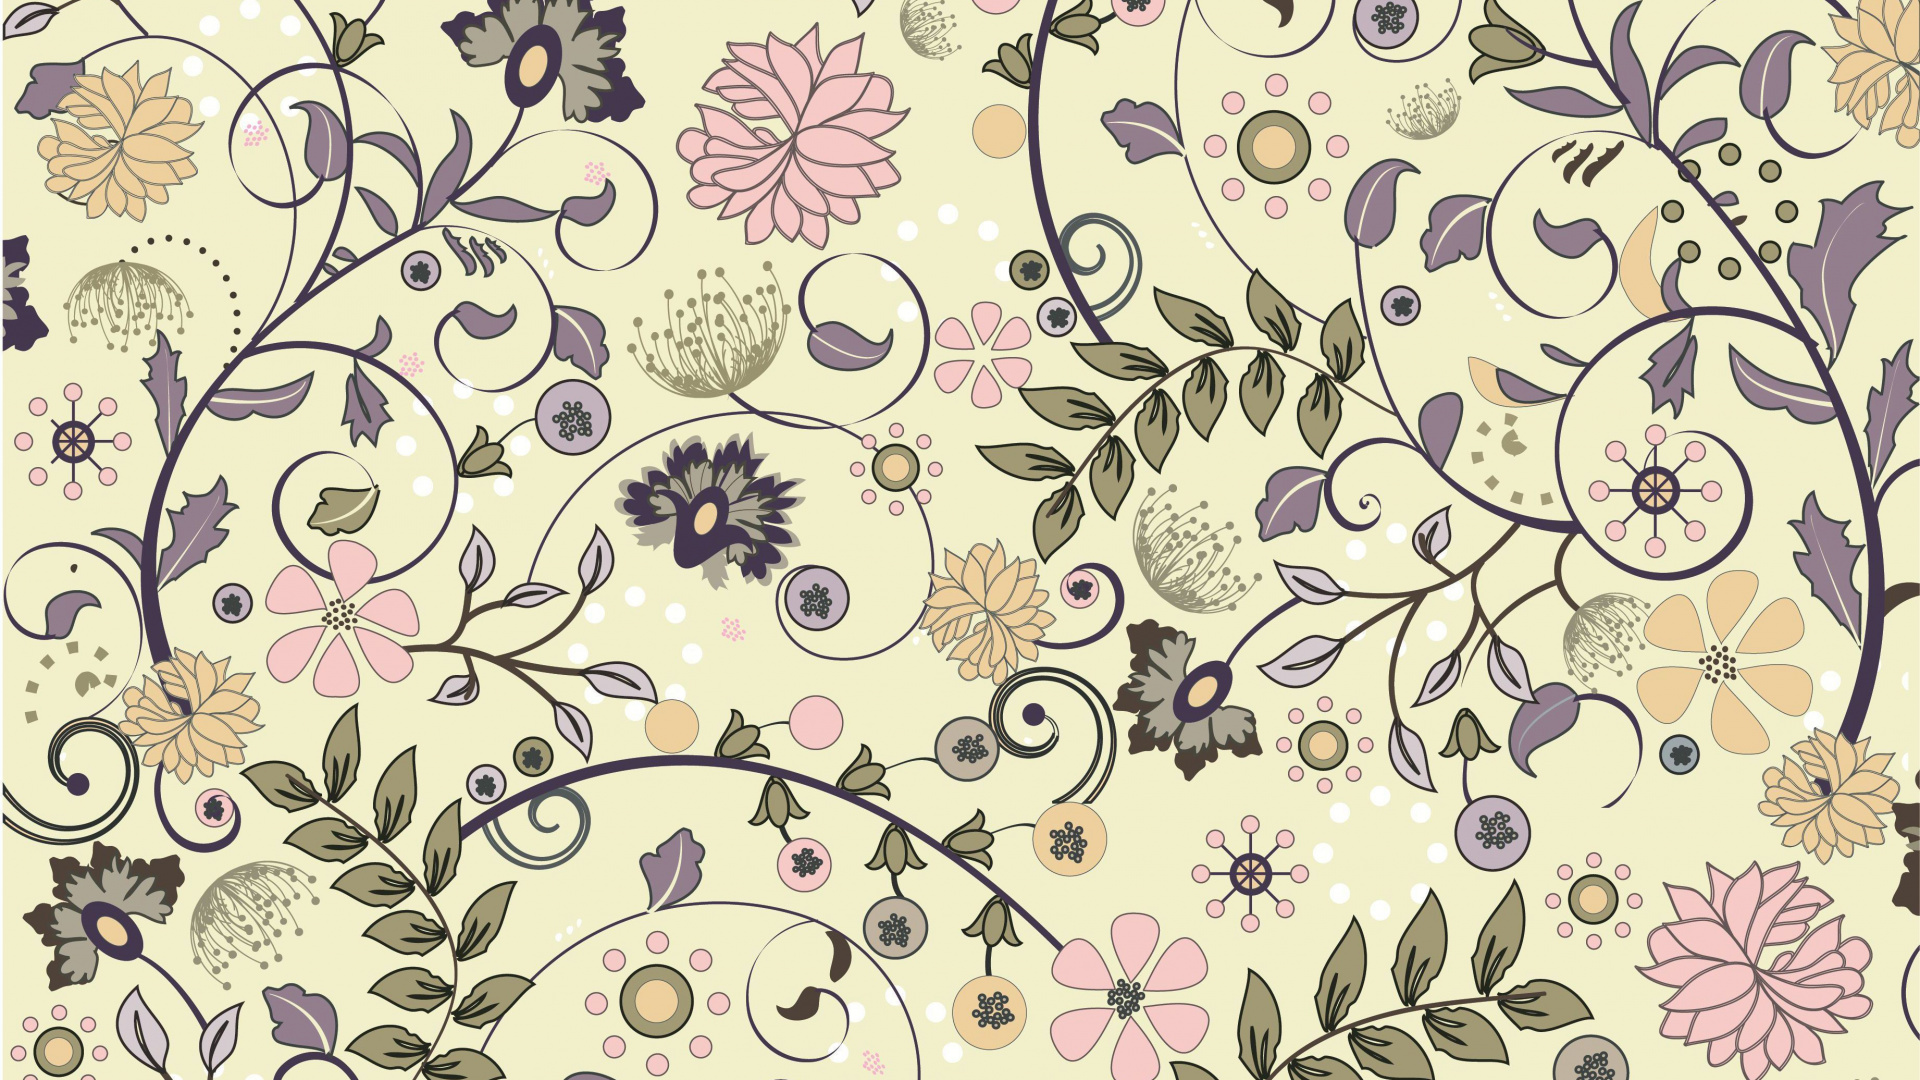 Textile Floral Blanc et Noir. Wallpaper in 1920x1080 Resolution